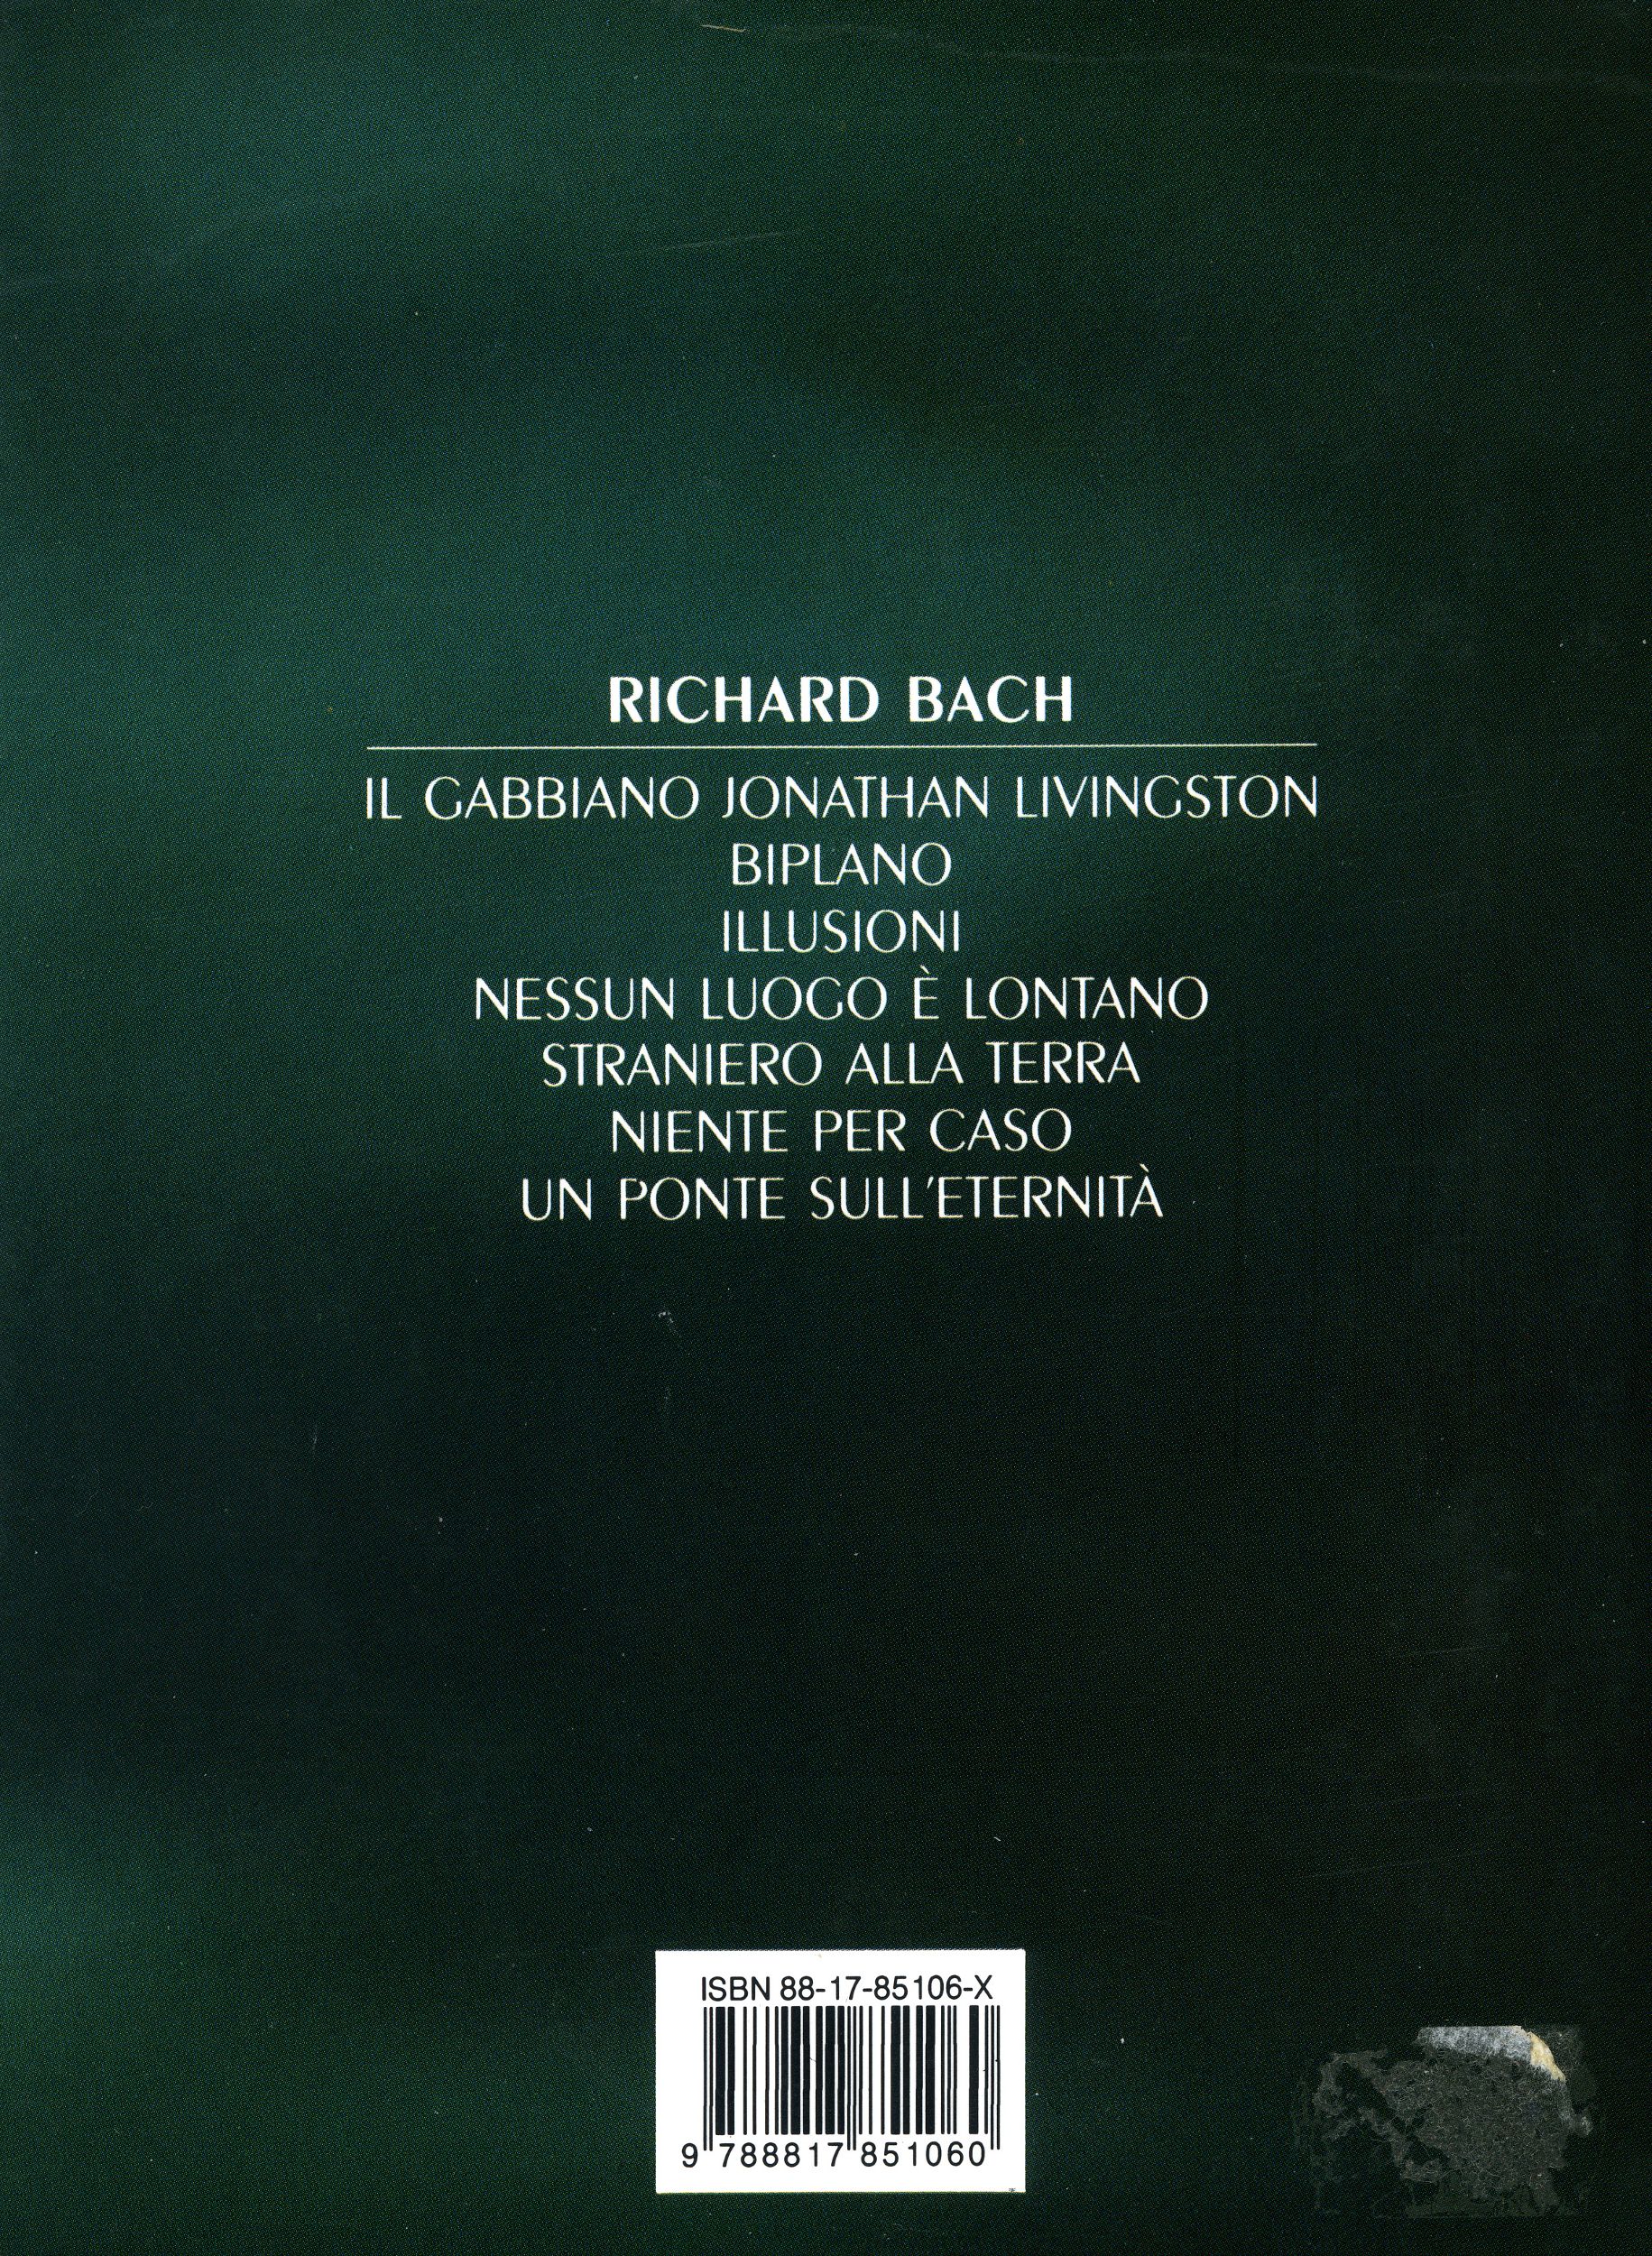 Un dono d'ali - Richard Bach - Retro